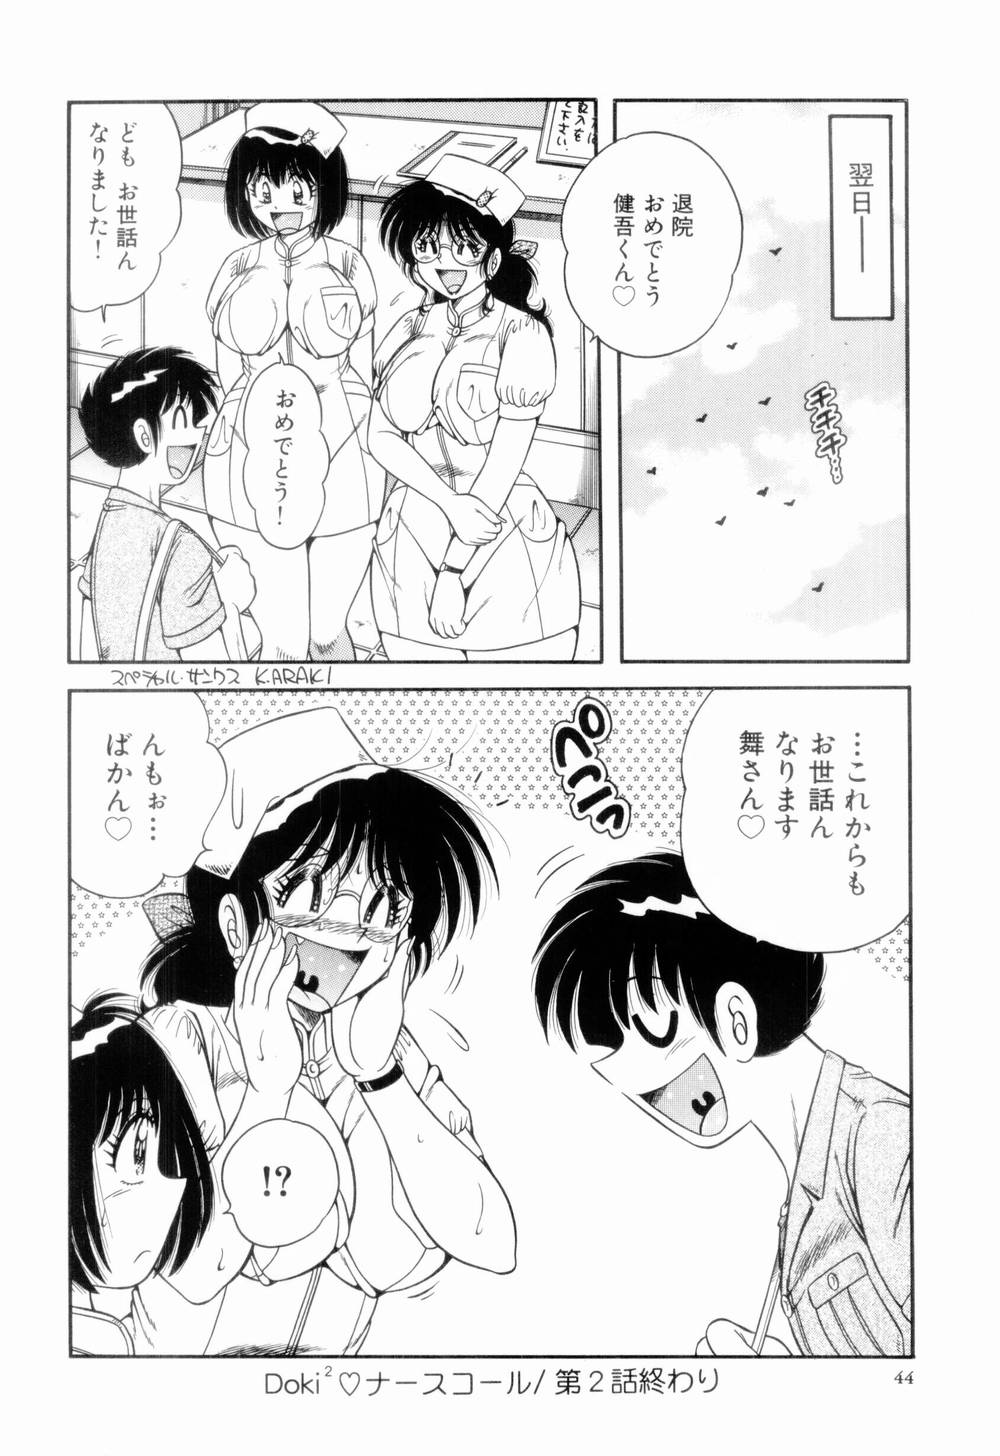 [Umino Sachi] Doki Doki Nurse Call page 48 full